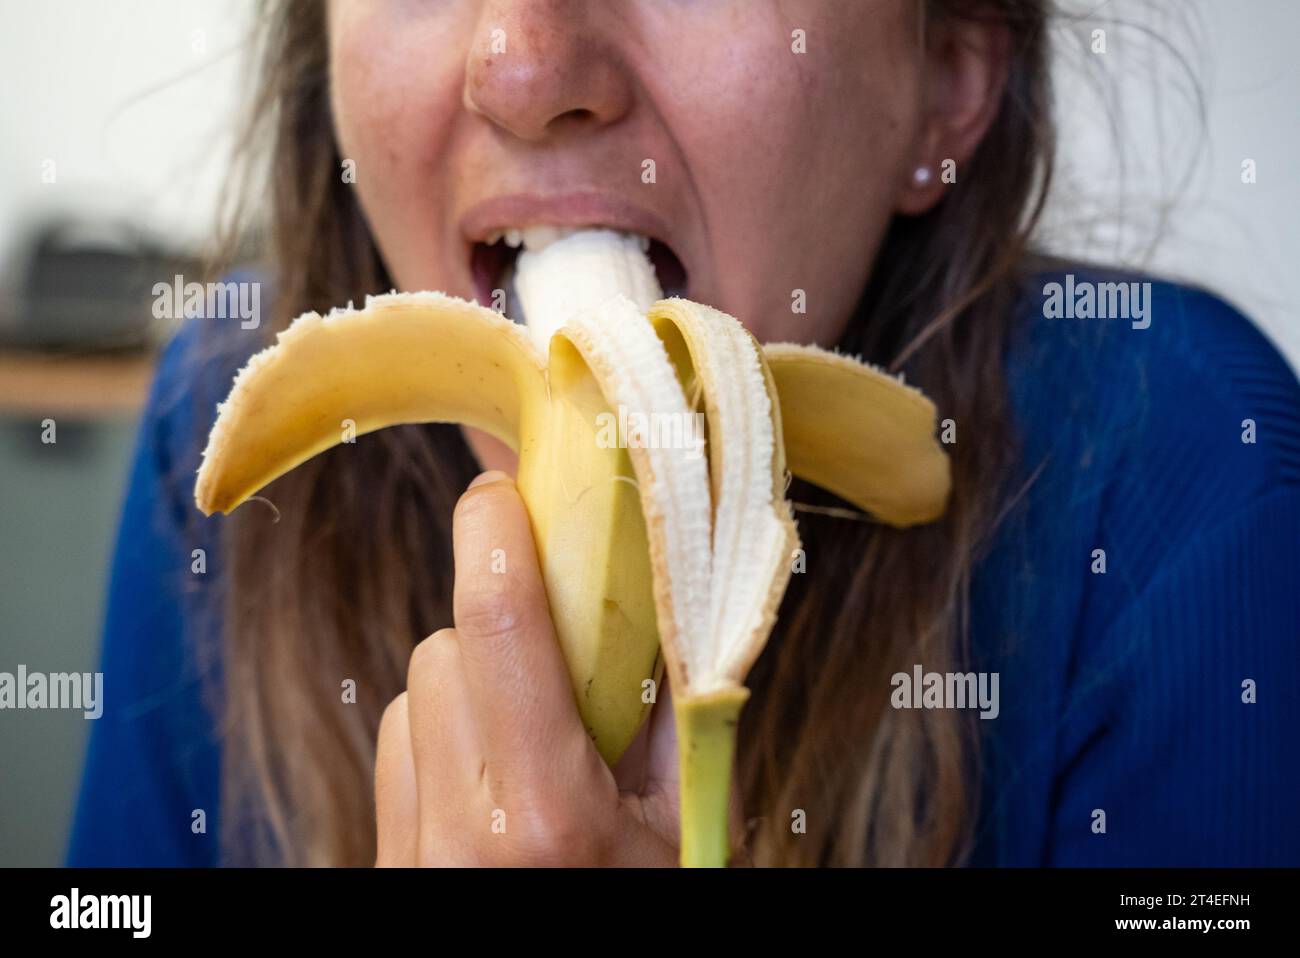 Woman eats food. Woman eats  banana. Close shot of girl eating  bananas. Face while eating banana Stock Photo